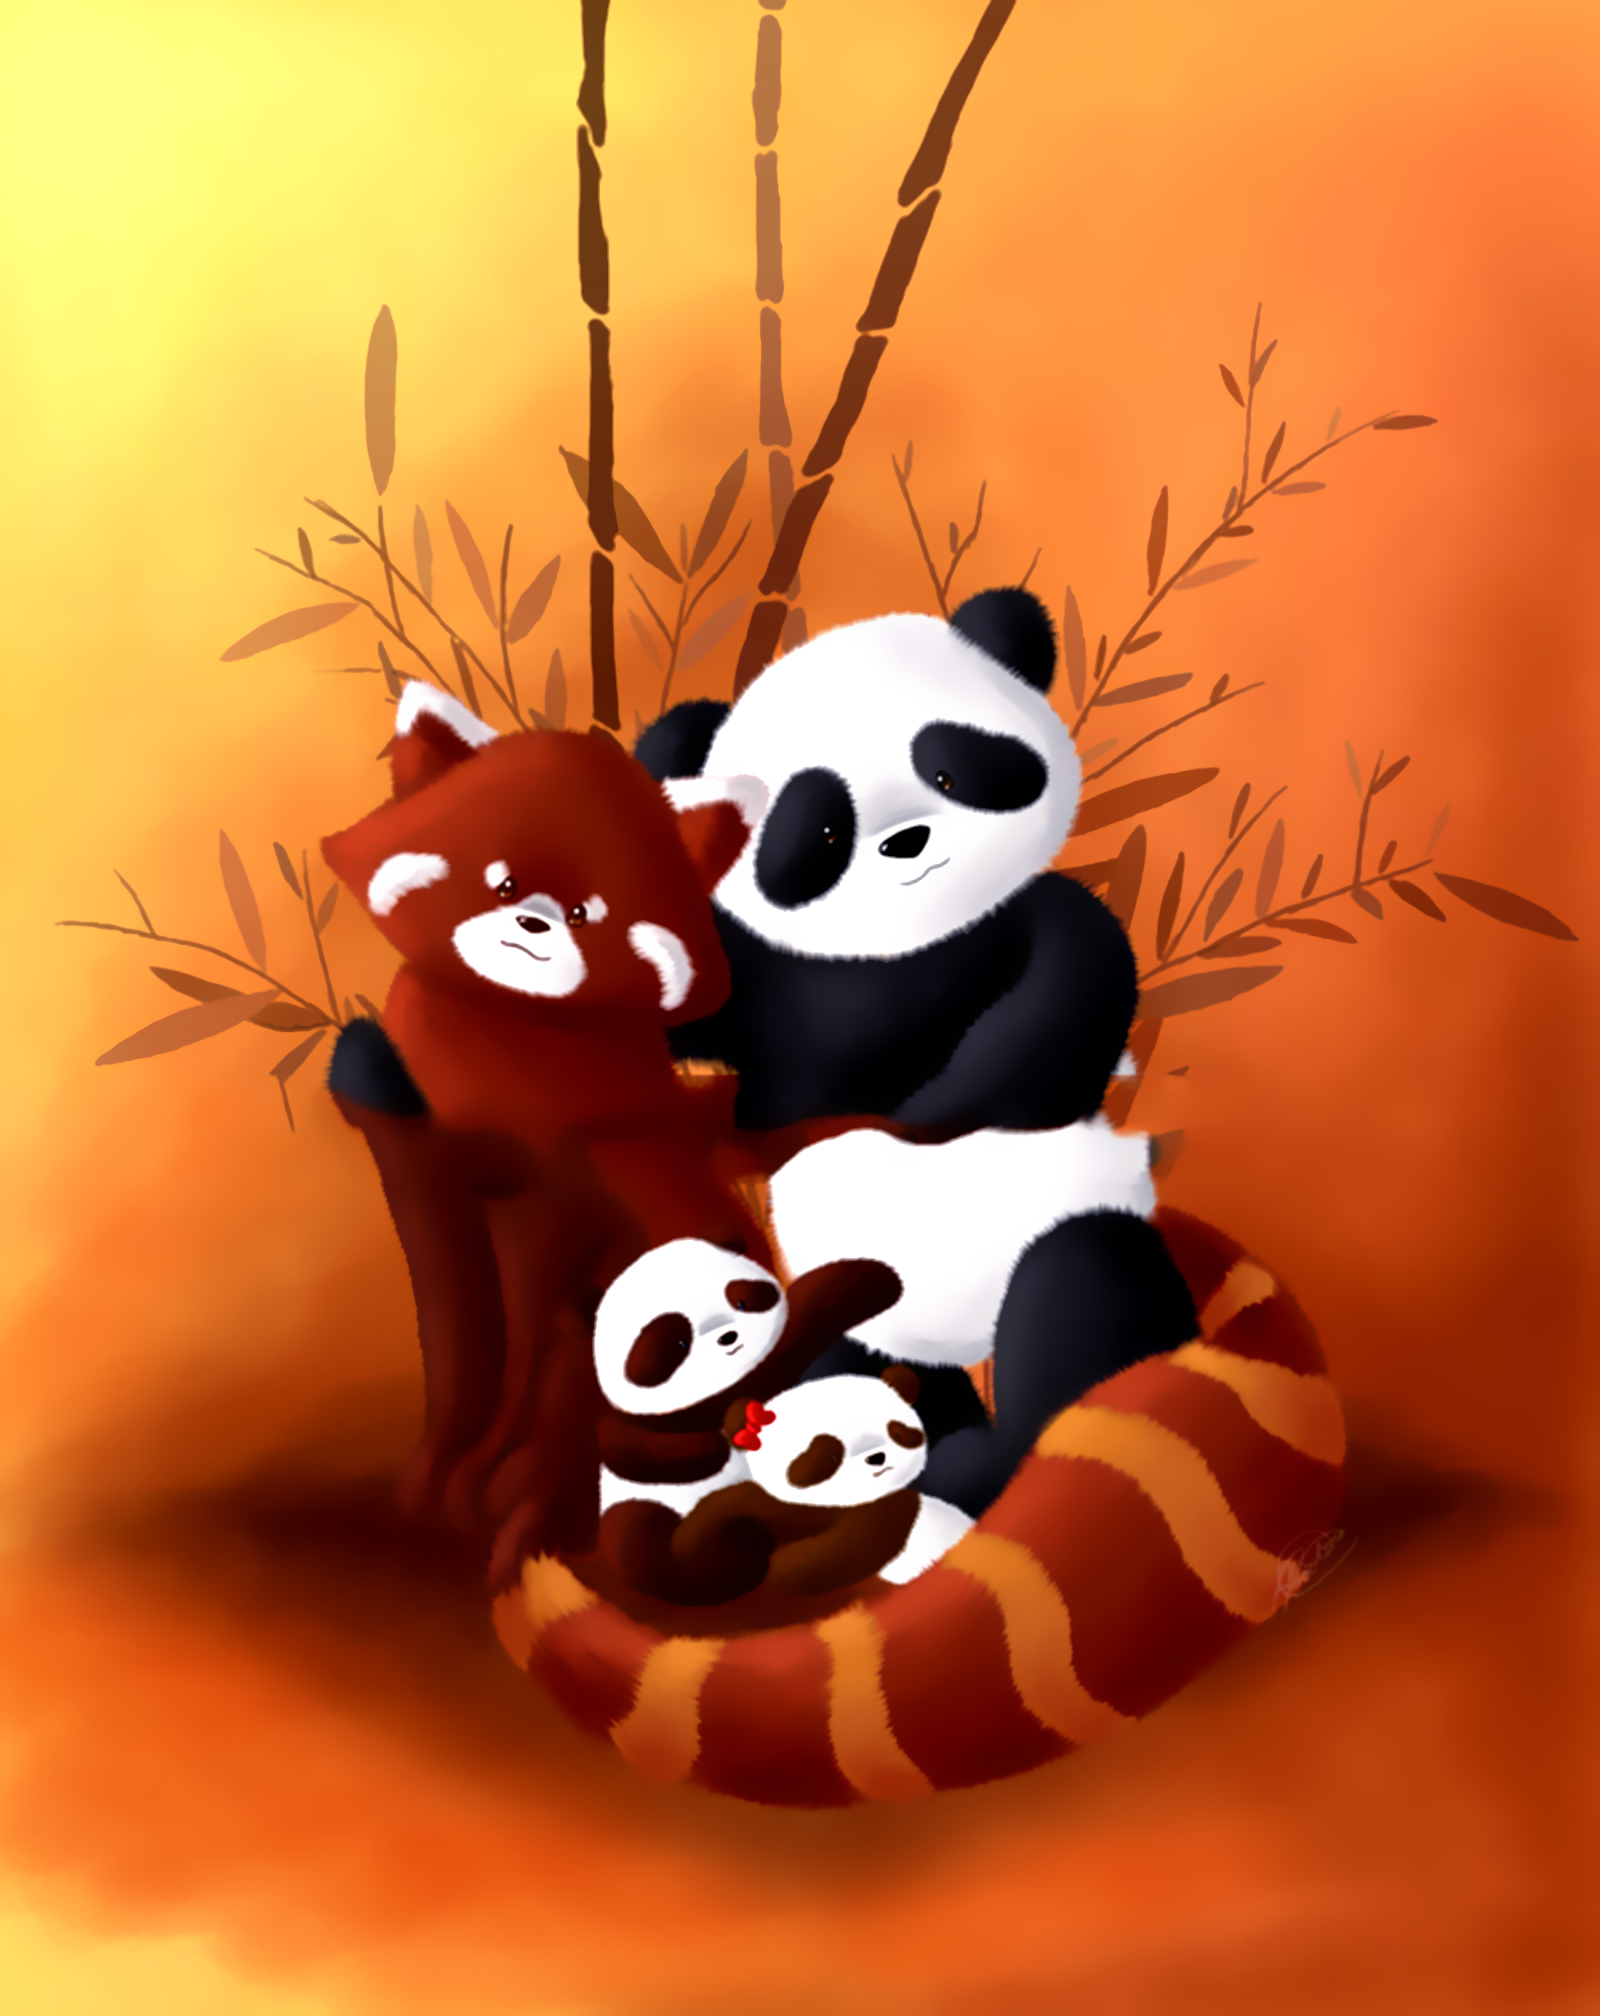 Hình nền gấu trúc Panda cute dễ thương nhất